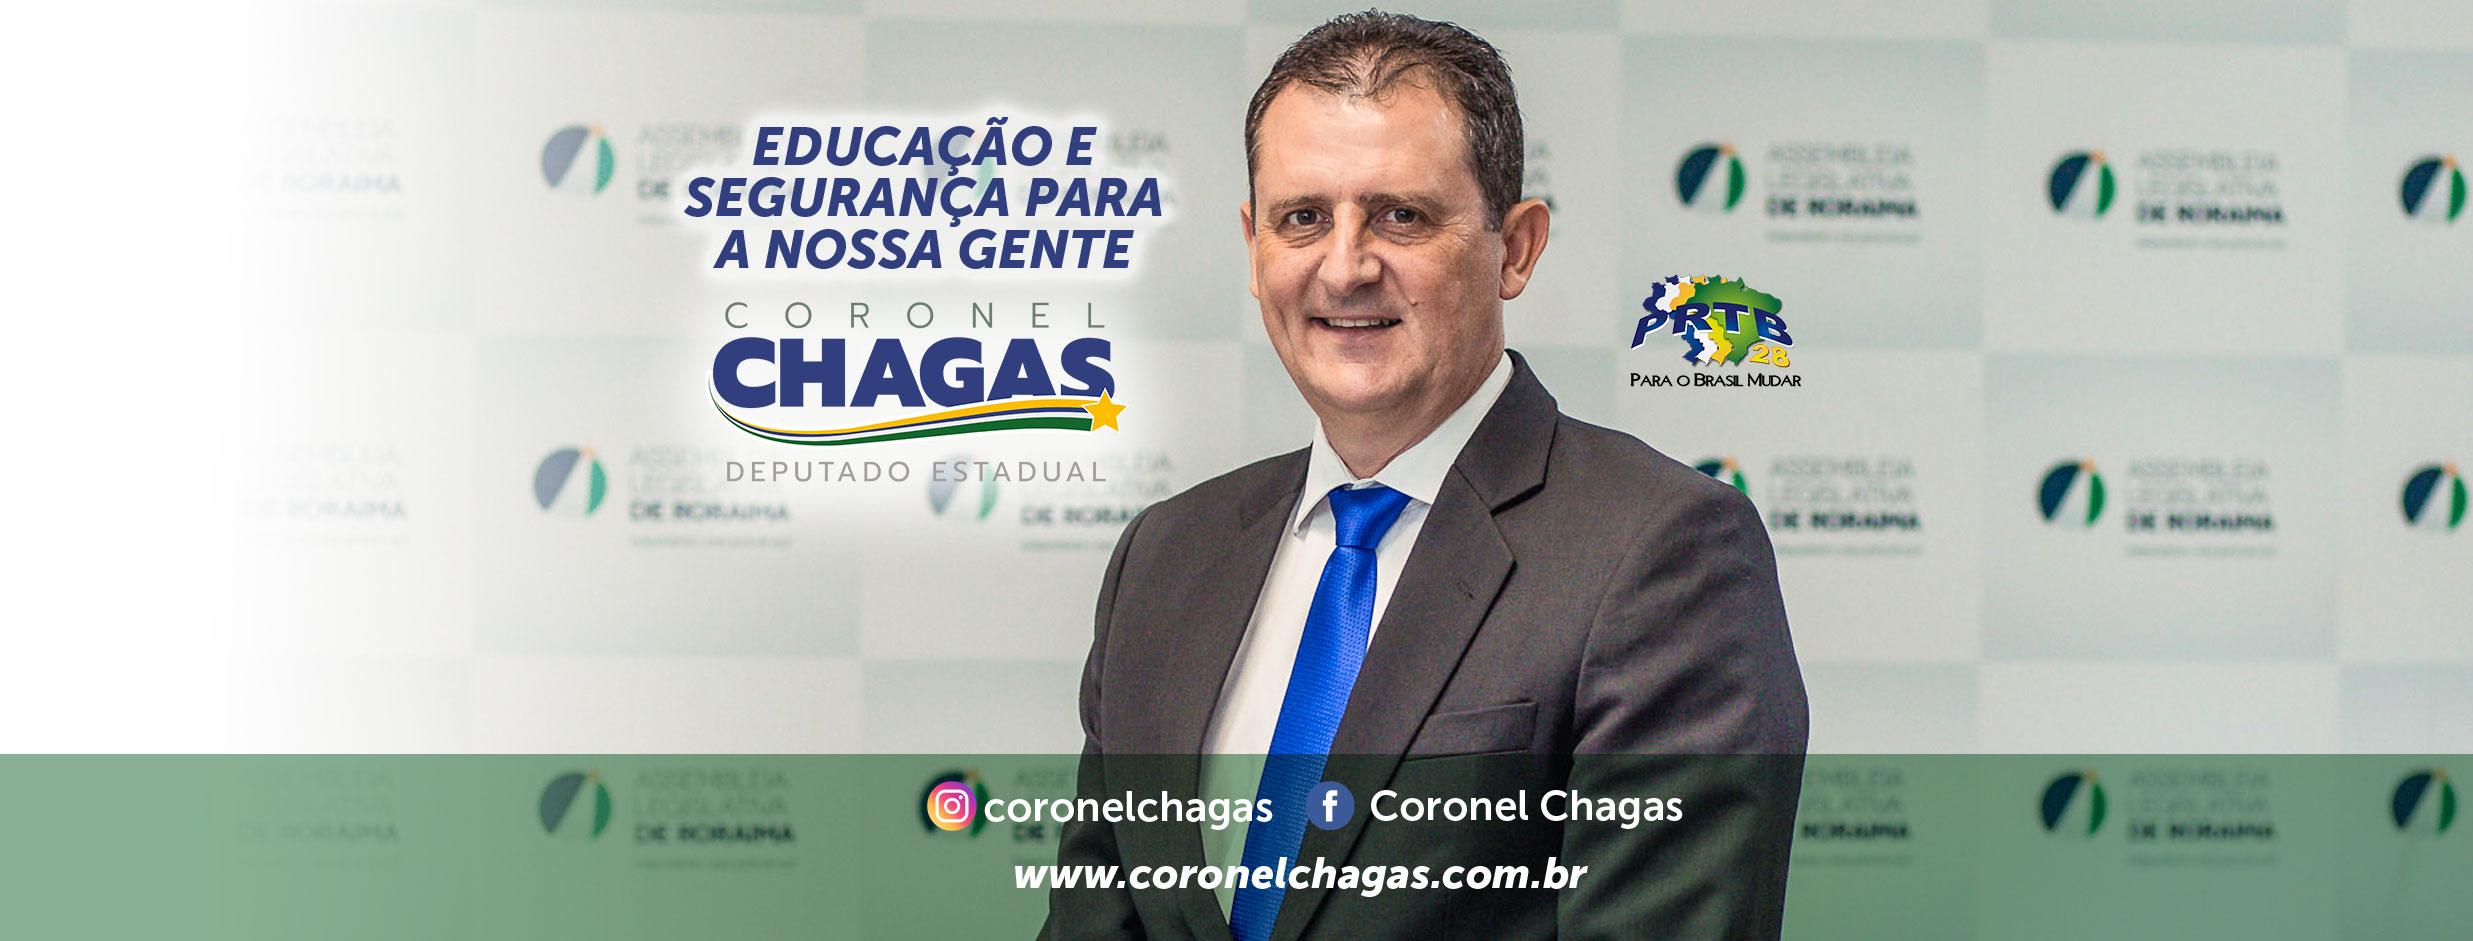 Capa-para-facebook-CHAGAS-final